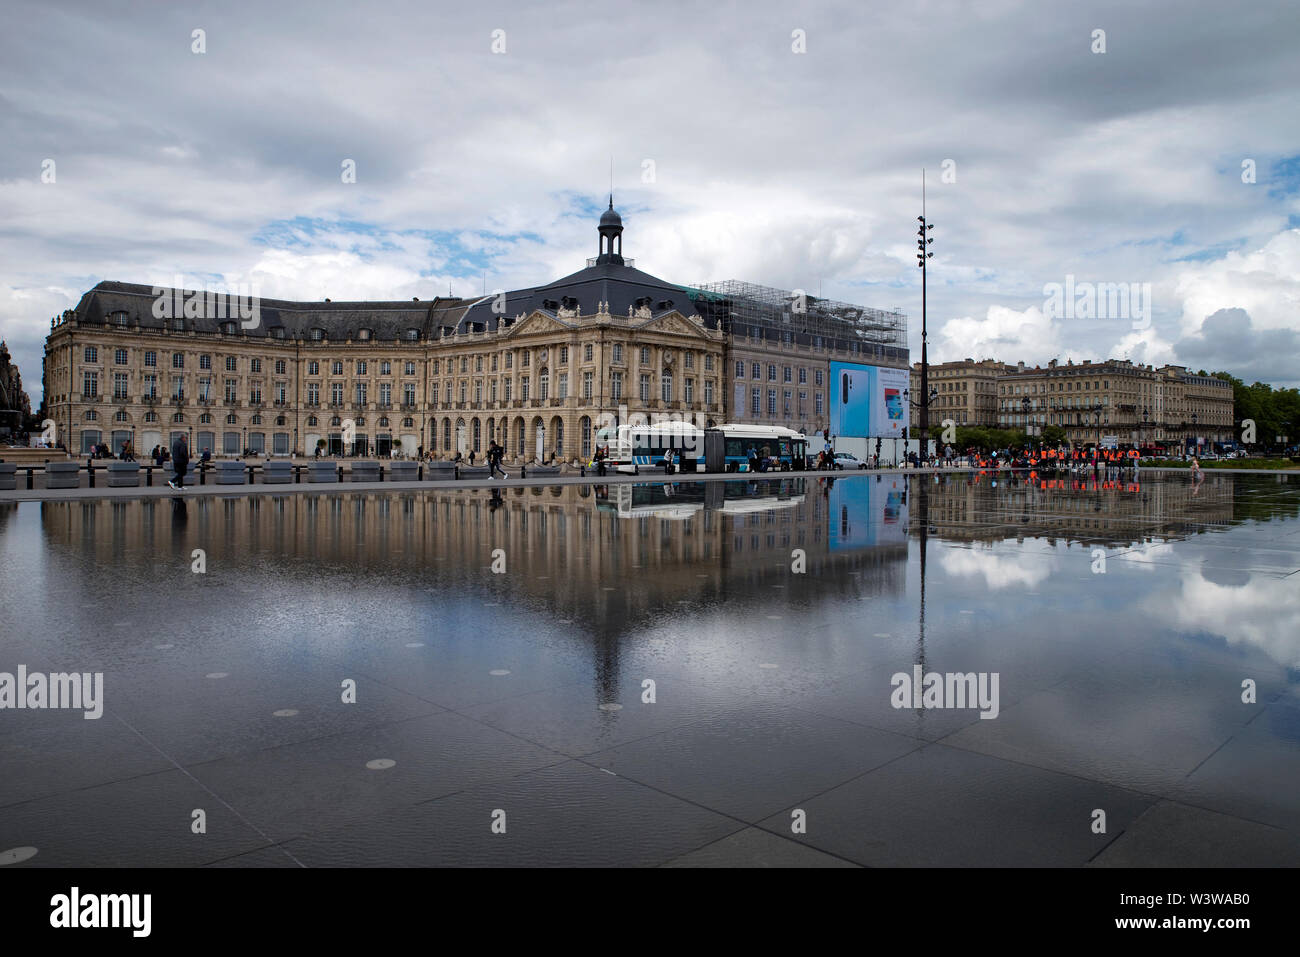 Miroir d'eau reflecting pool - Bordeaux, France Stock Photo